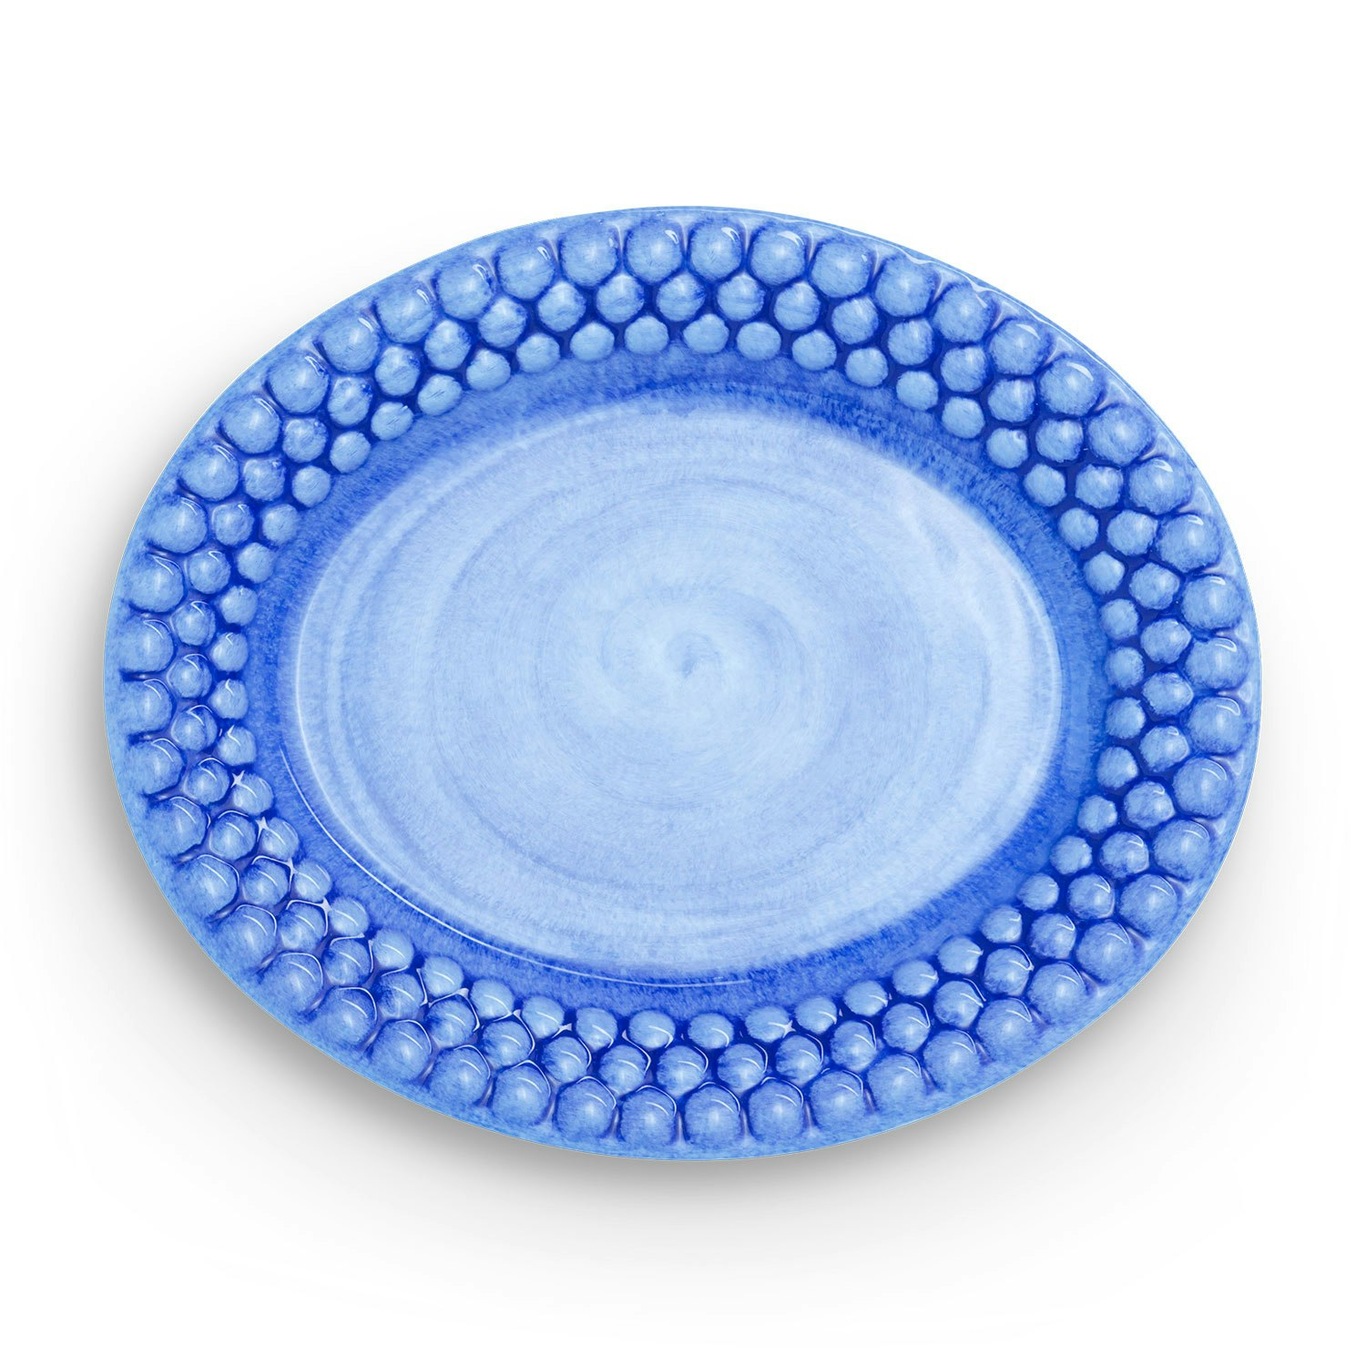 Bubbles Oval Plate 20 cm, Light Blue